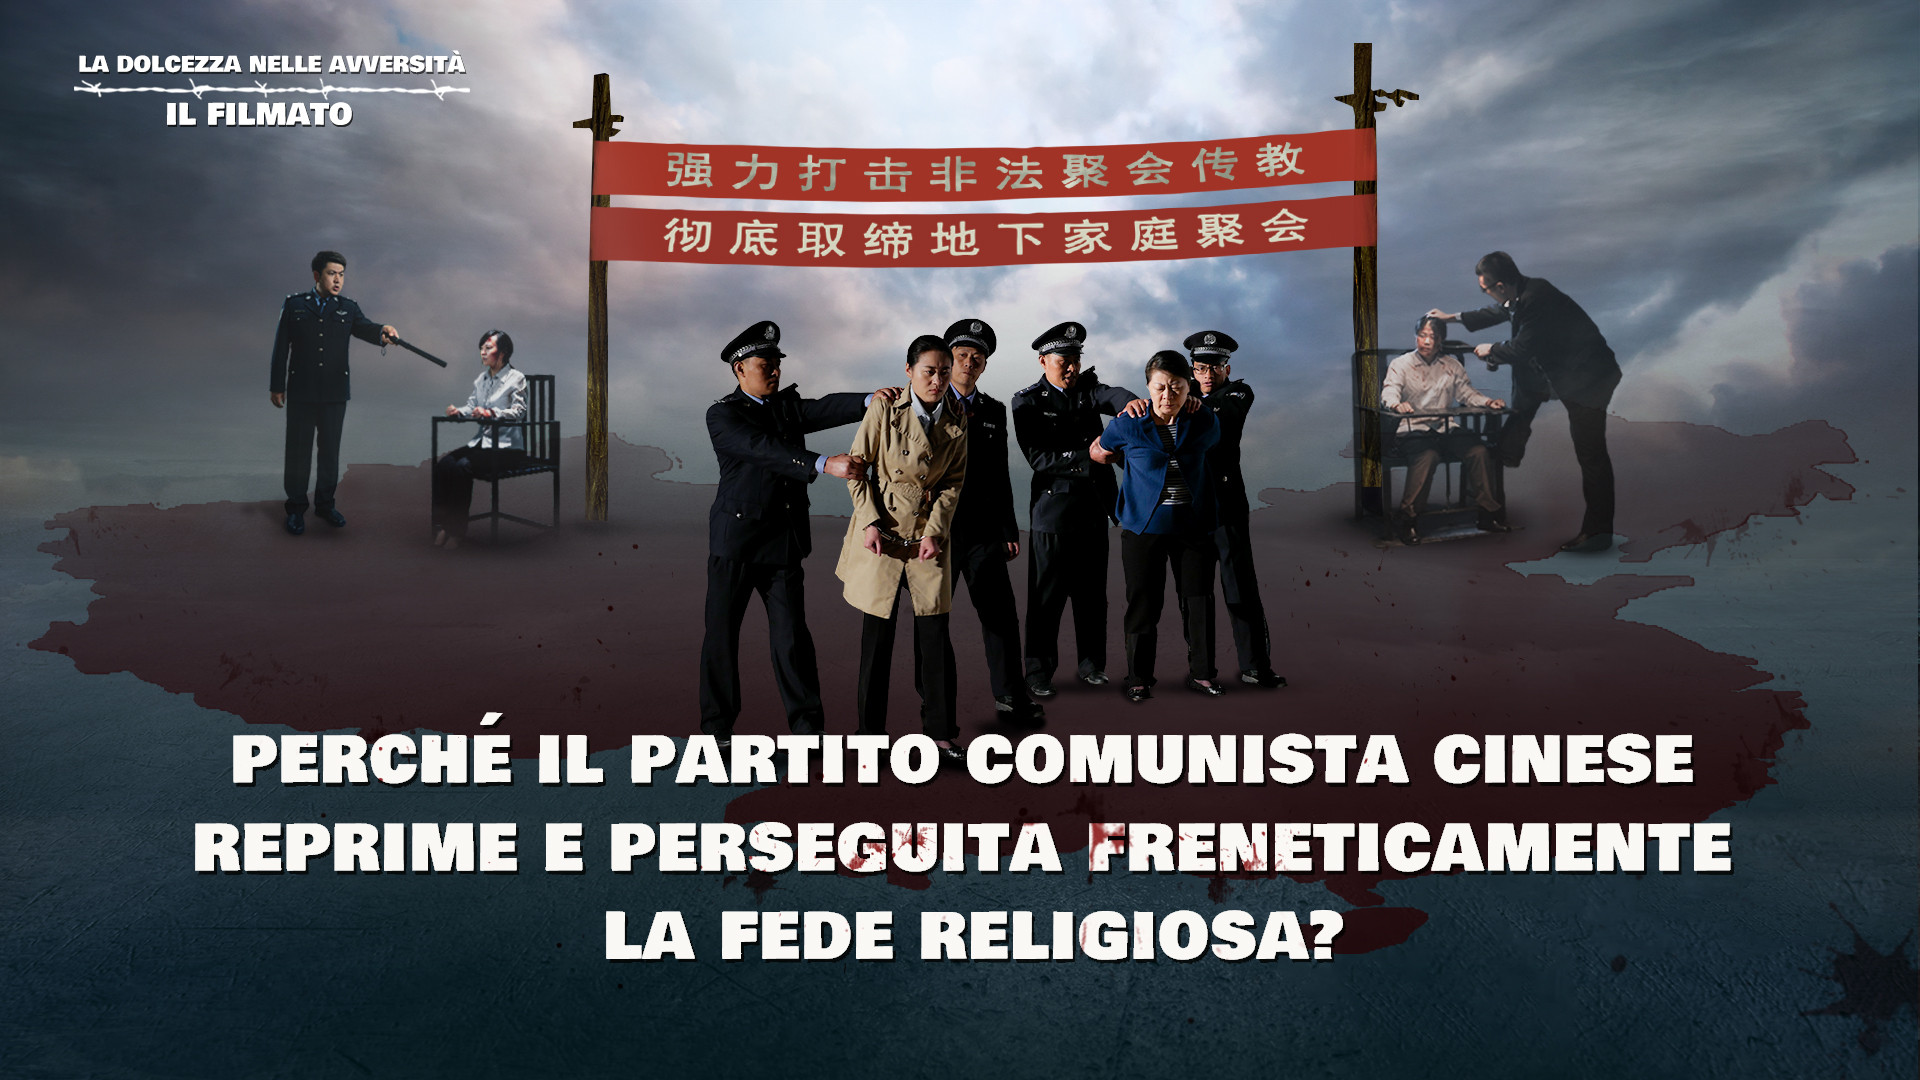 Perché il Partito Comunista Cinese reprime e perseguita freneticamente la fede religiosa